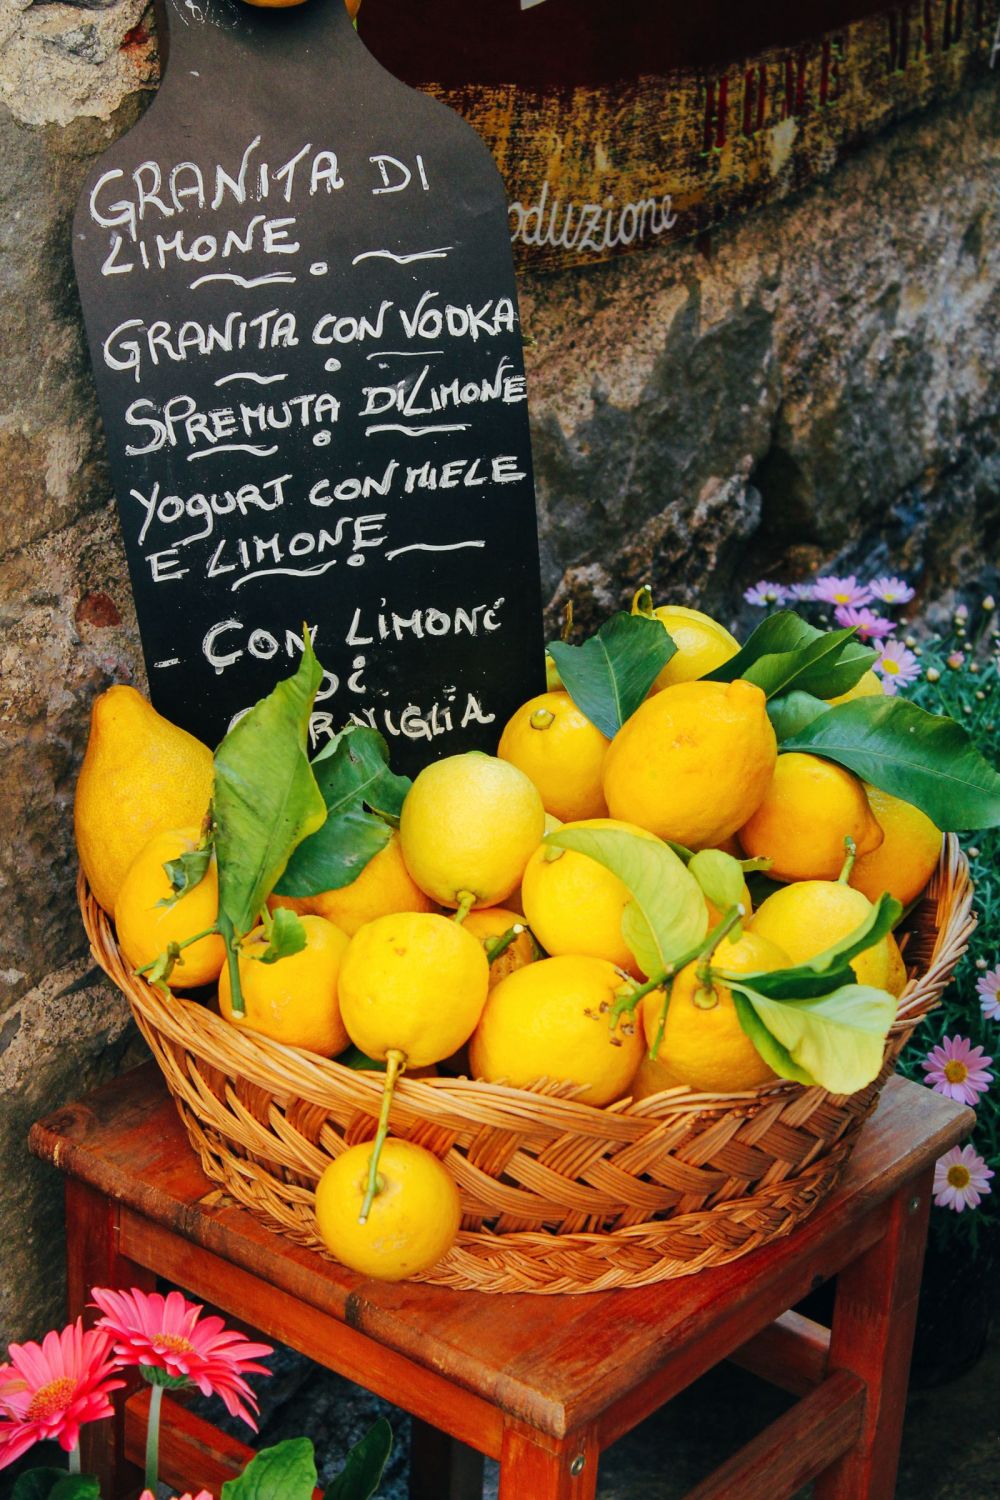 Corniglia in Cinque Terre, Italy - The Photo Diary! [3 of 5] (16)